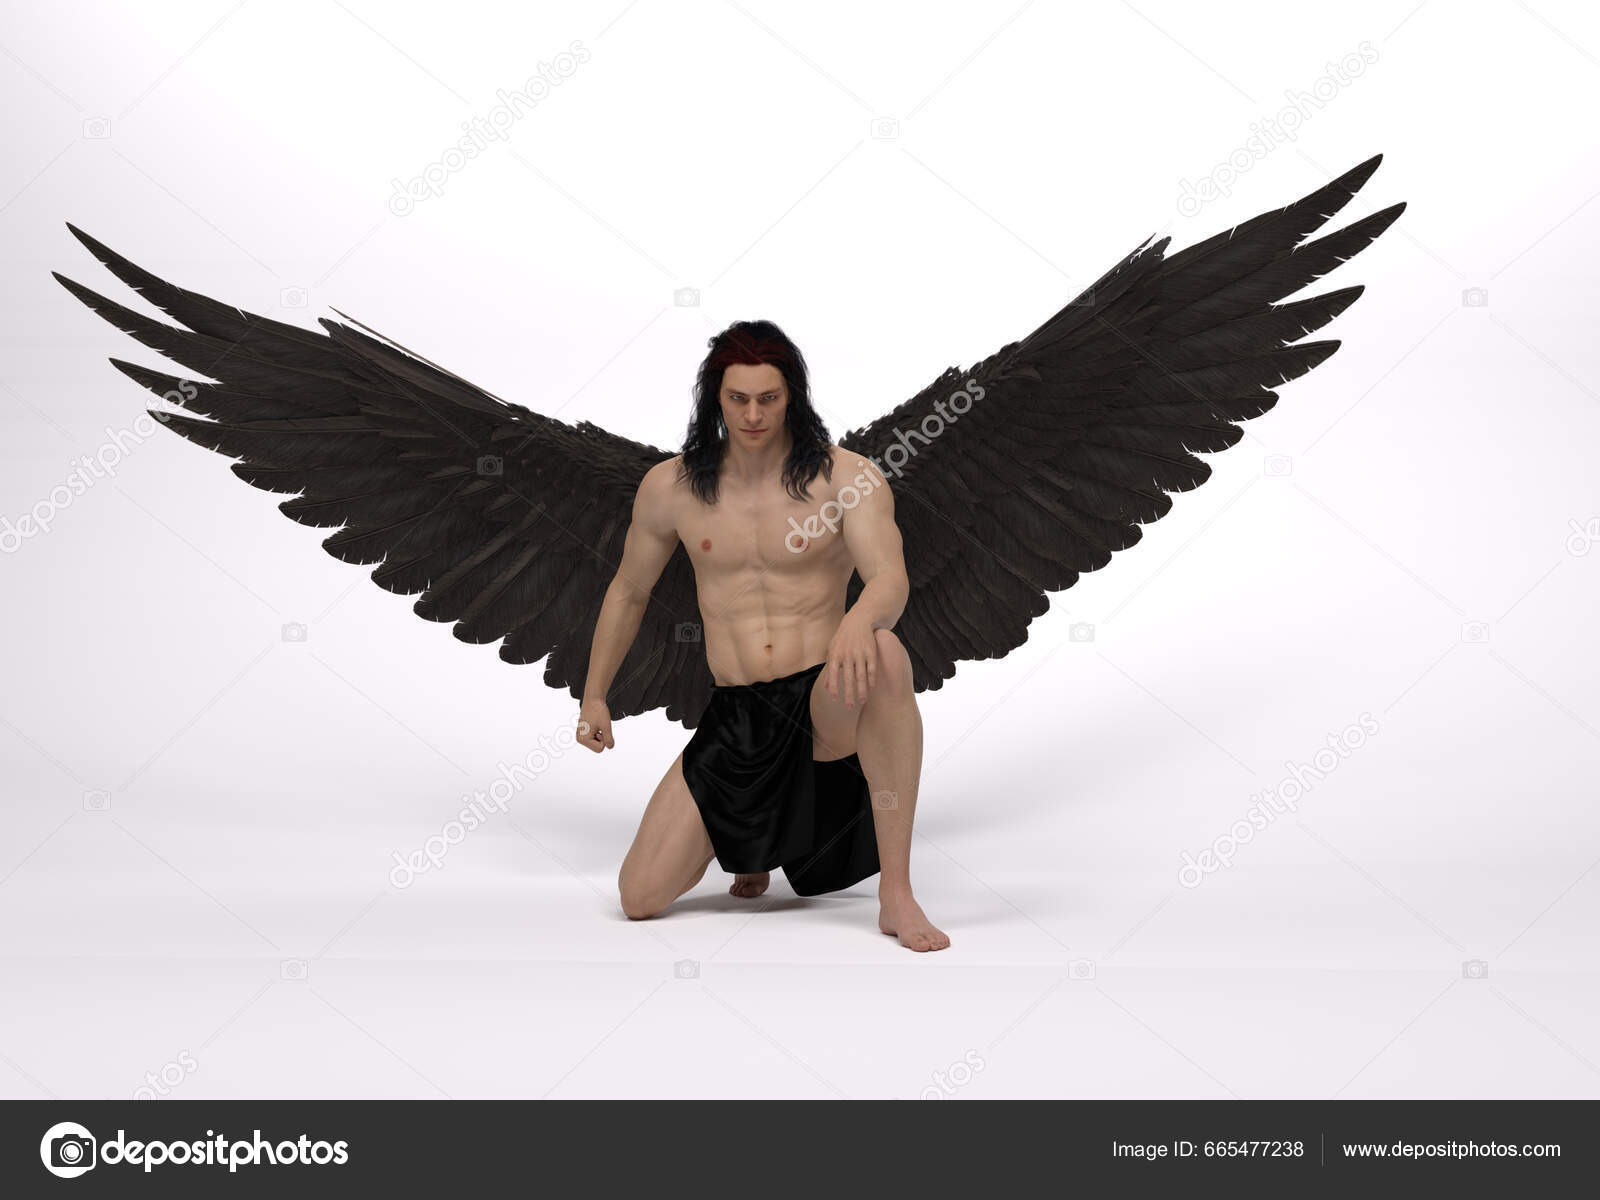 male fallen angel wallpaper